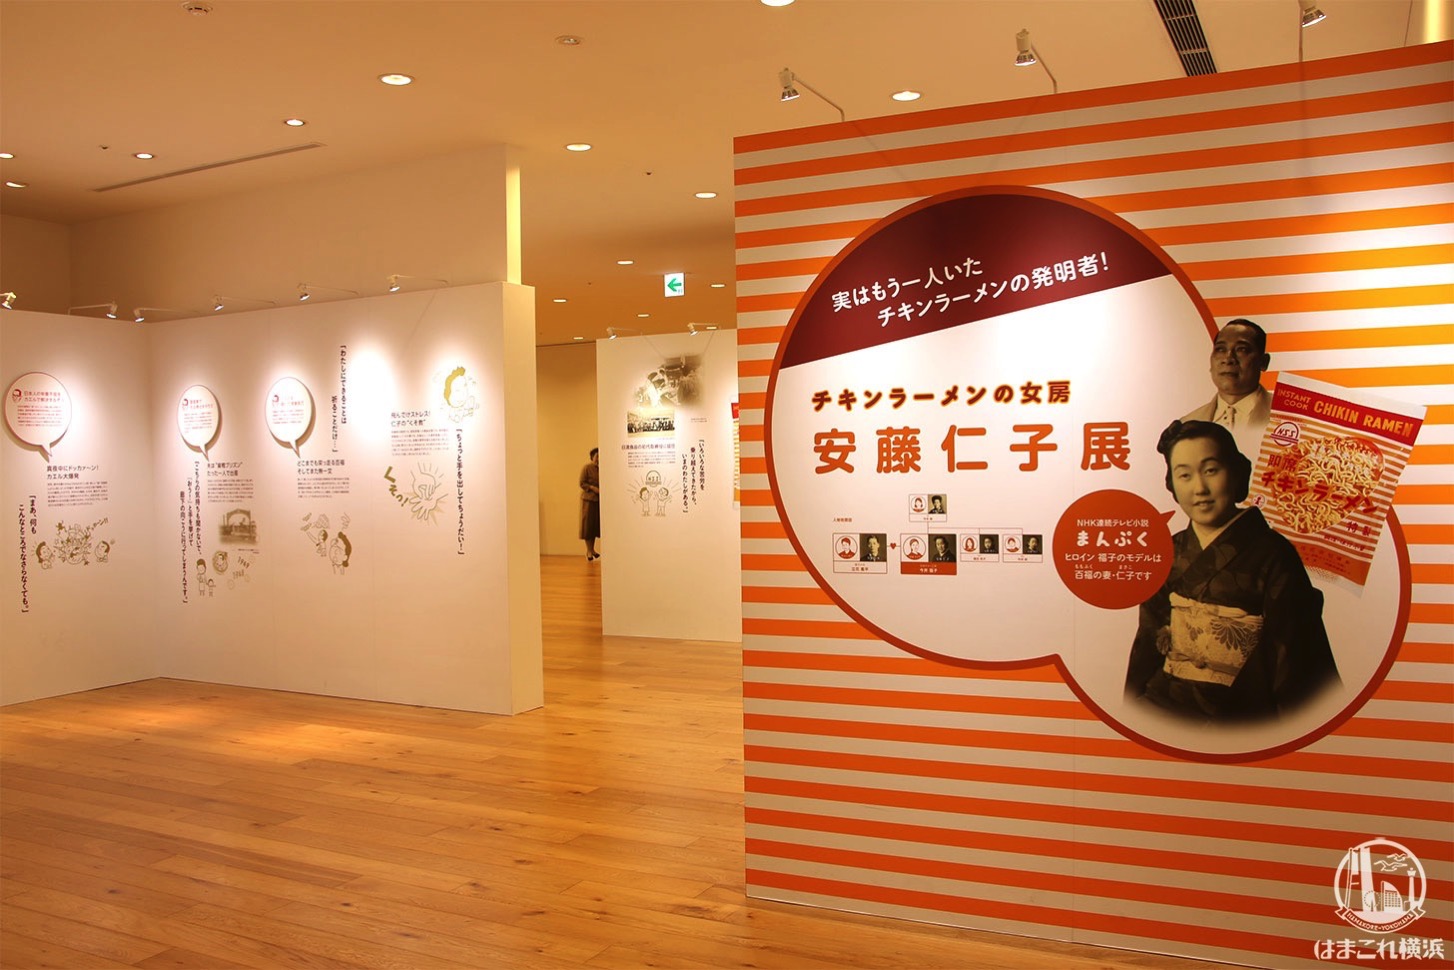 カップヌードルミュージアム 横浜で朝ドラ まんぷく モデル夫婦の展示が人気 はまこれ横浜